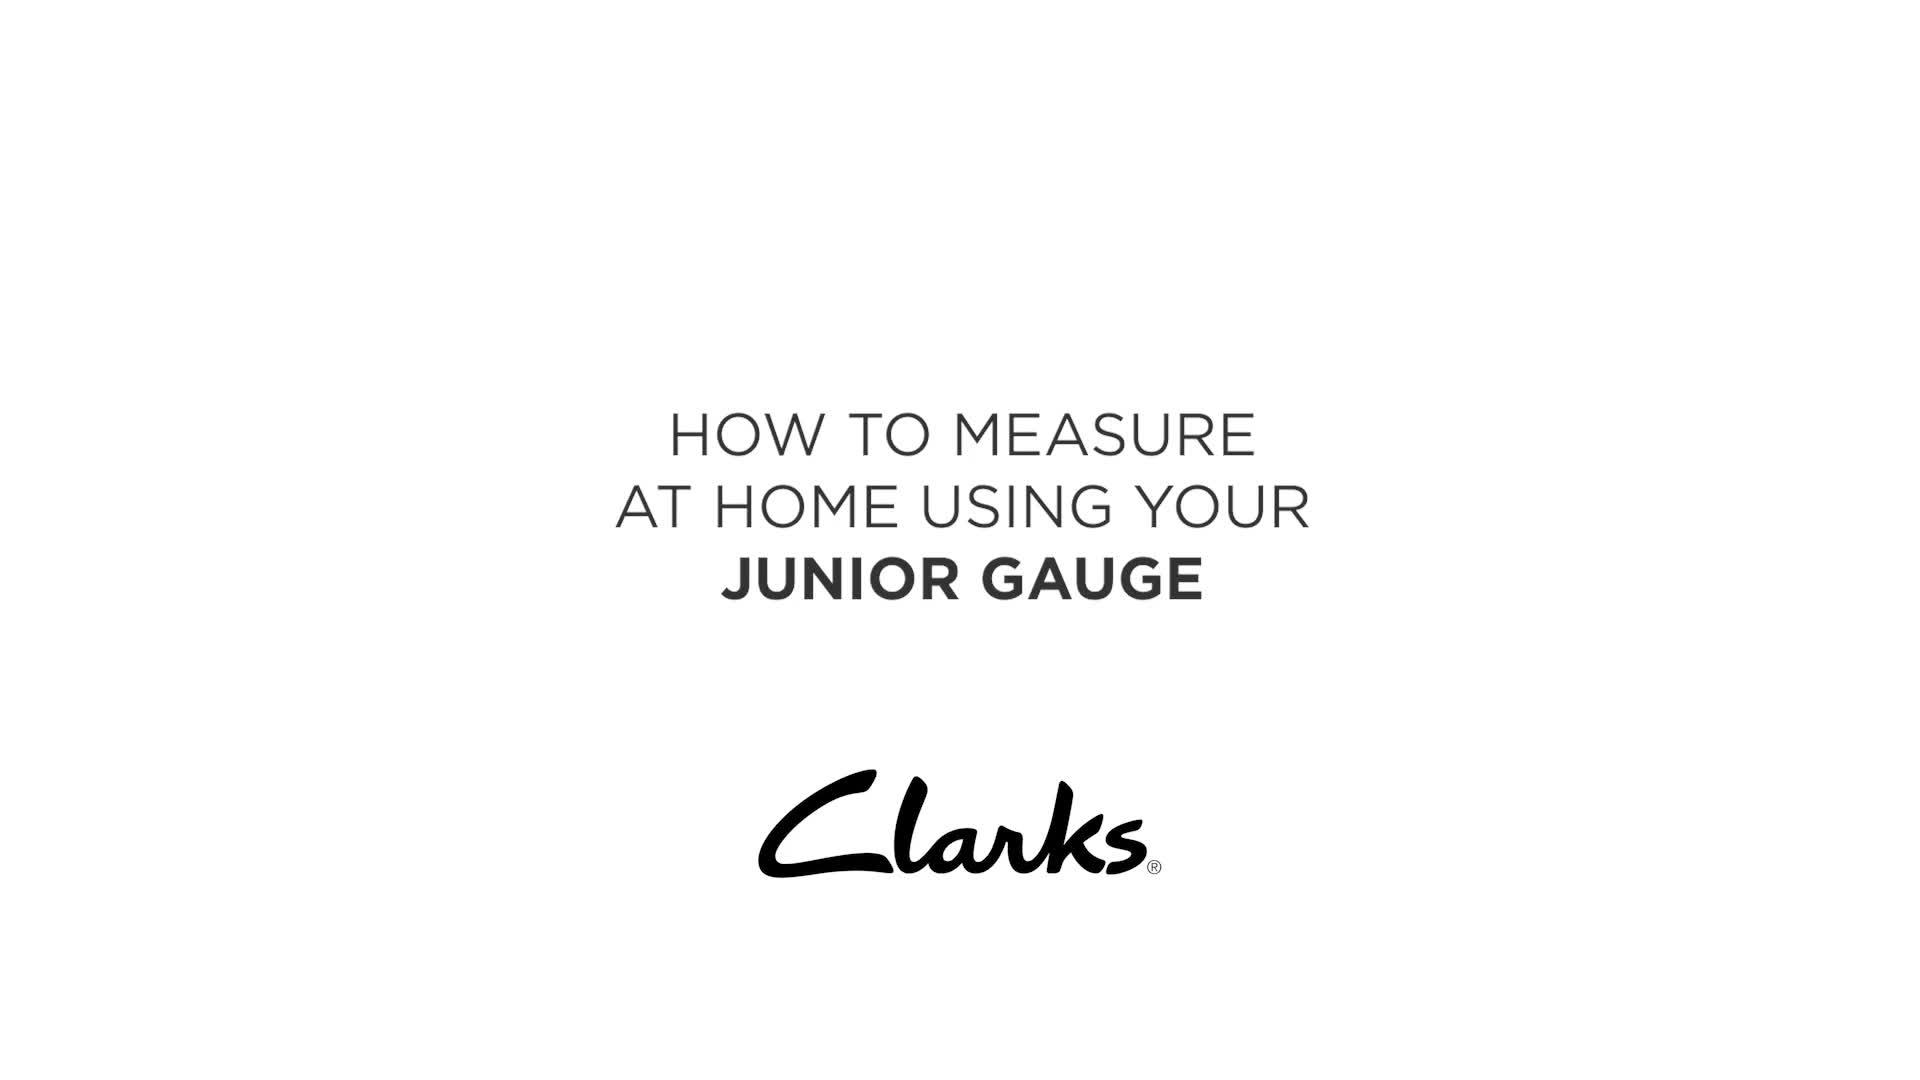 clarks junior gauge calculator